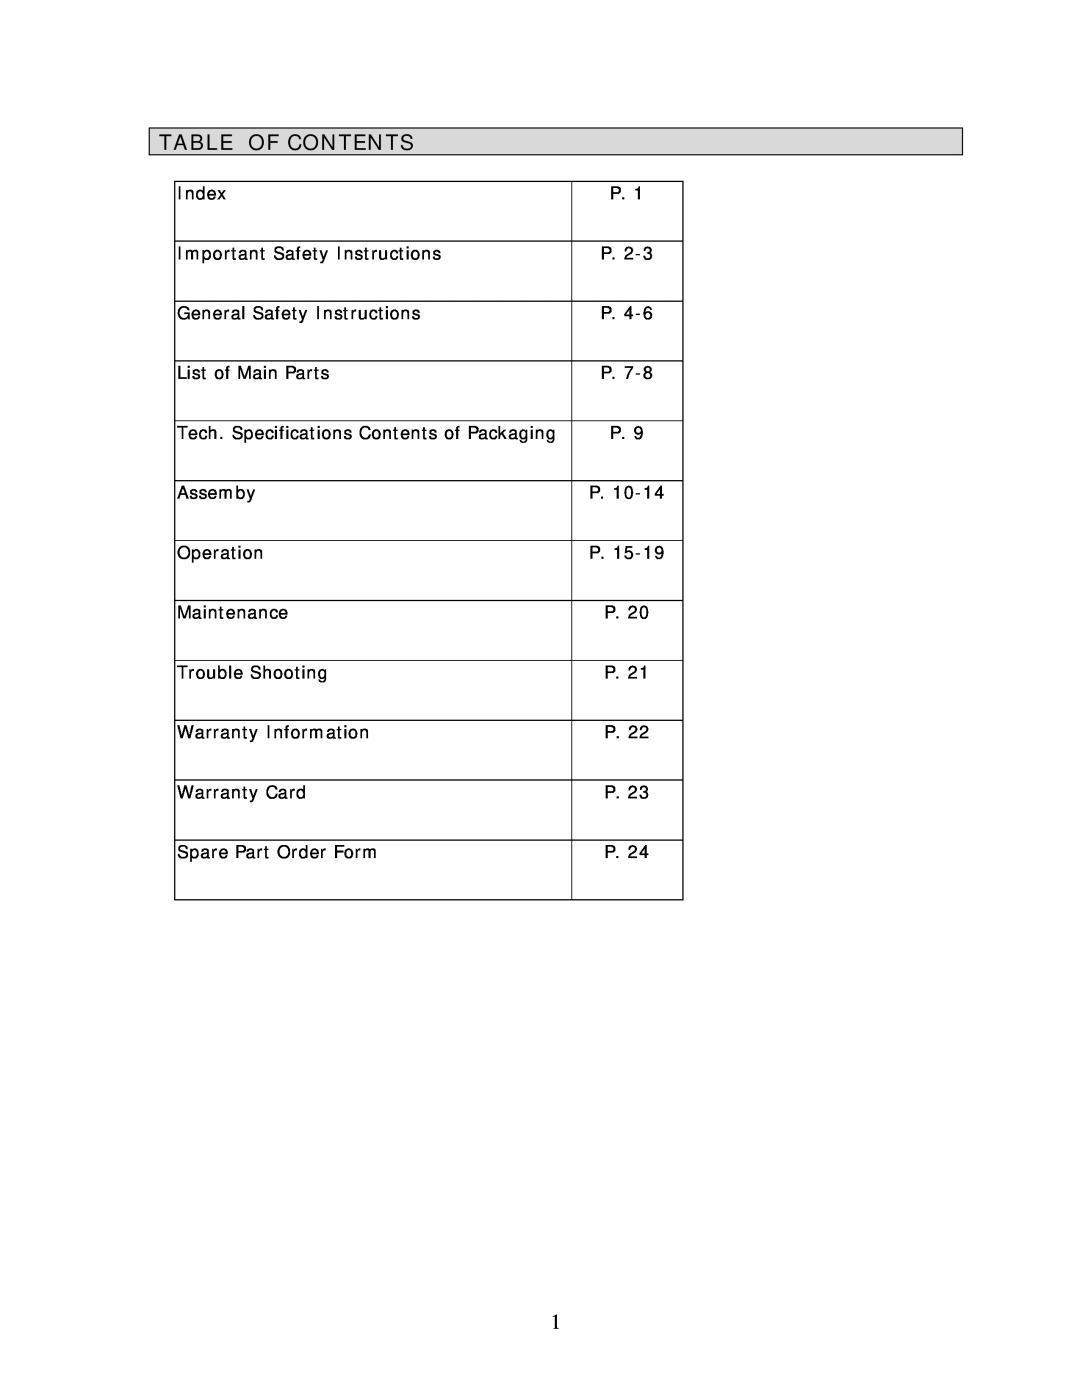 Wachsmuth & Krogmann QL-3100B manual Table Of Contents 